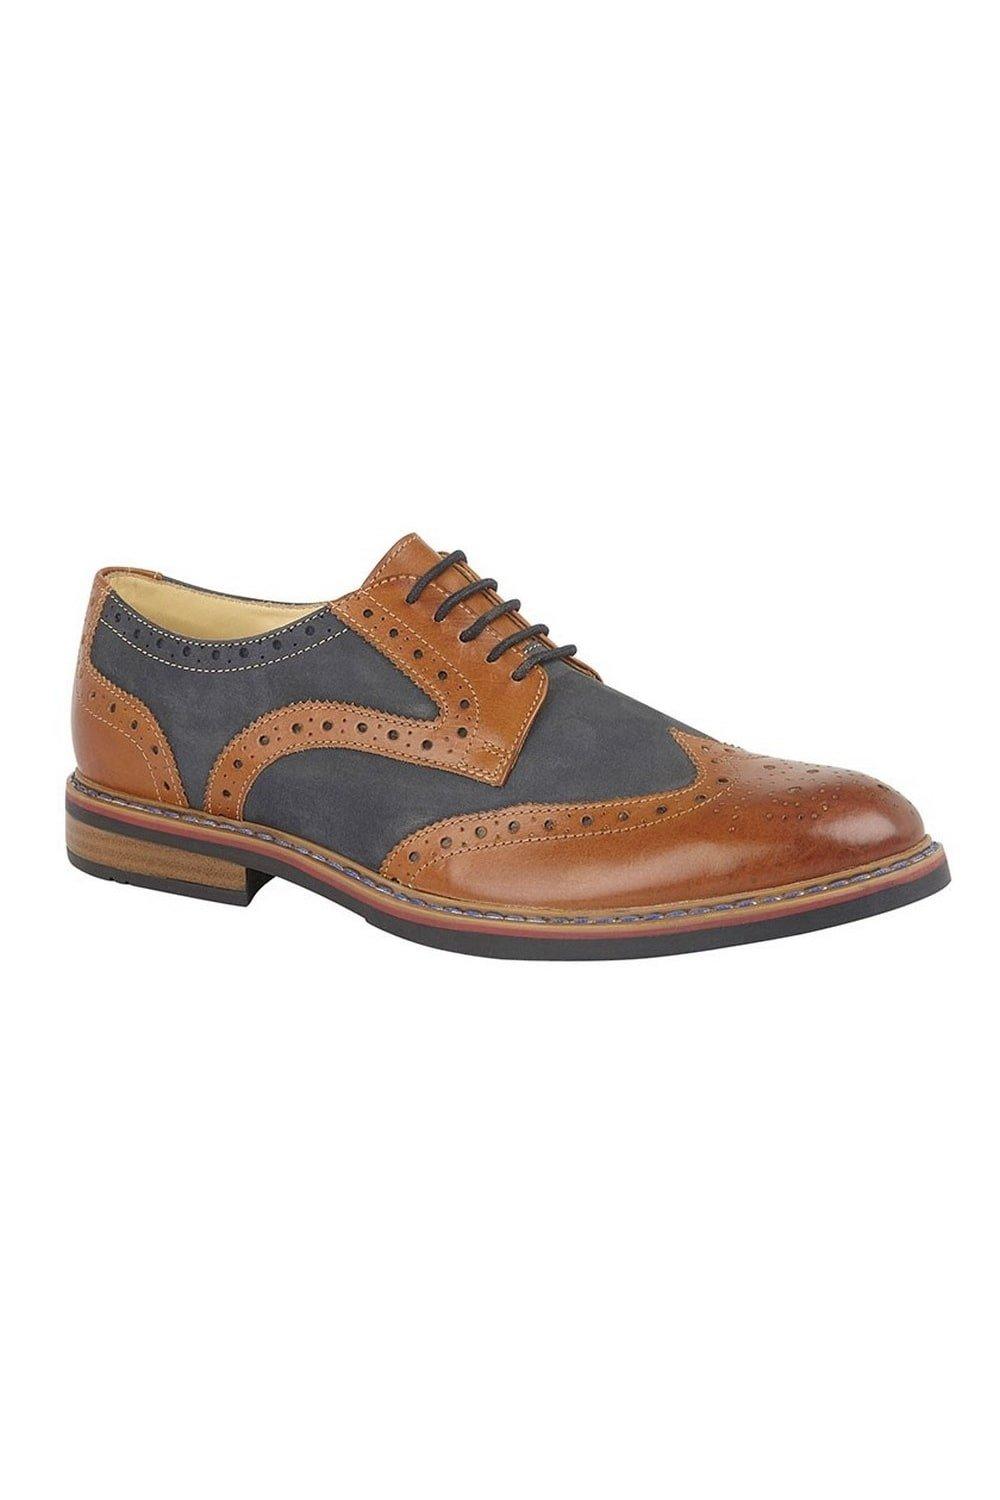 Туфли из нубука со шнуровкой и броговами с глазами Roamers, коричневый мужские кожаные деловые туфли на шнуровке для офиса зеленый